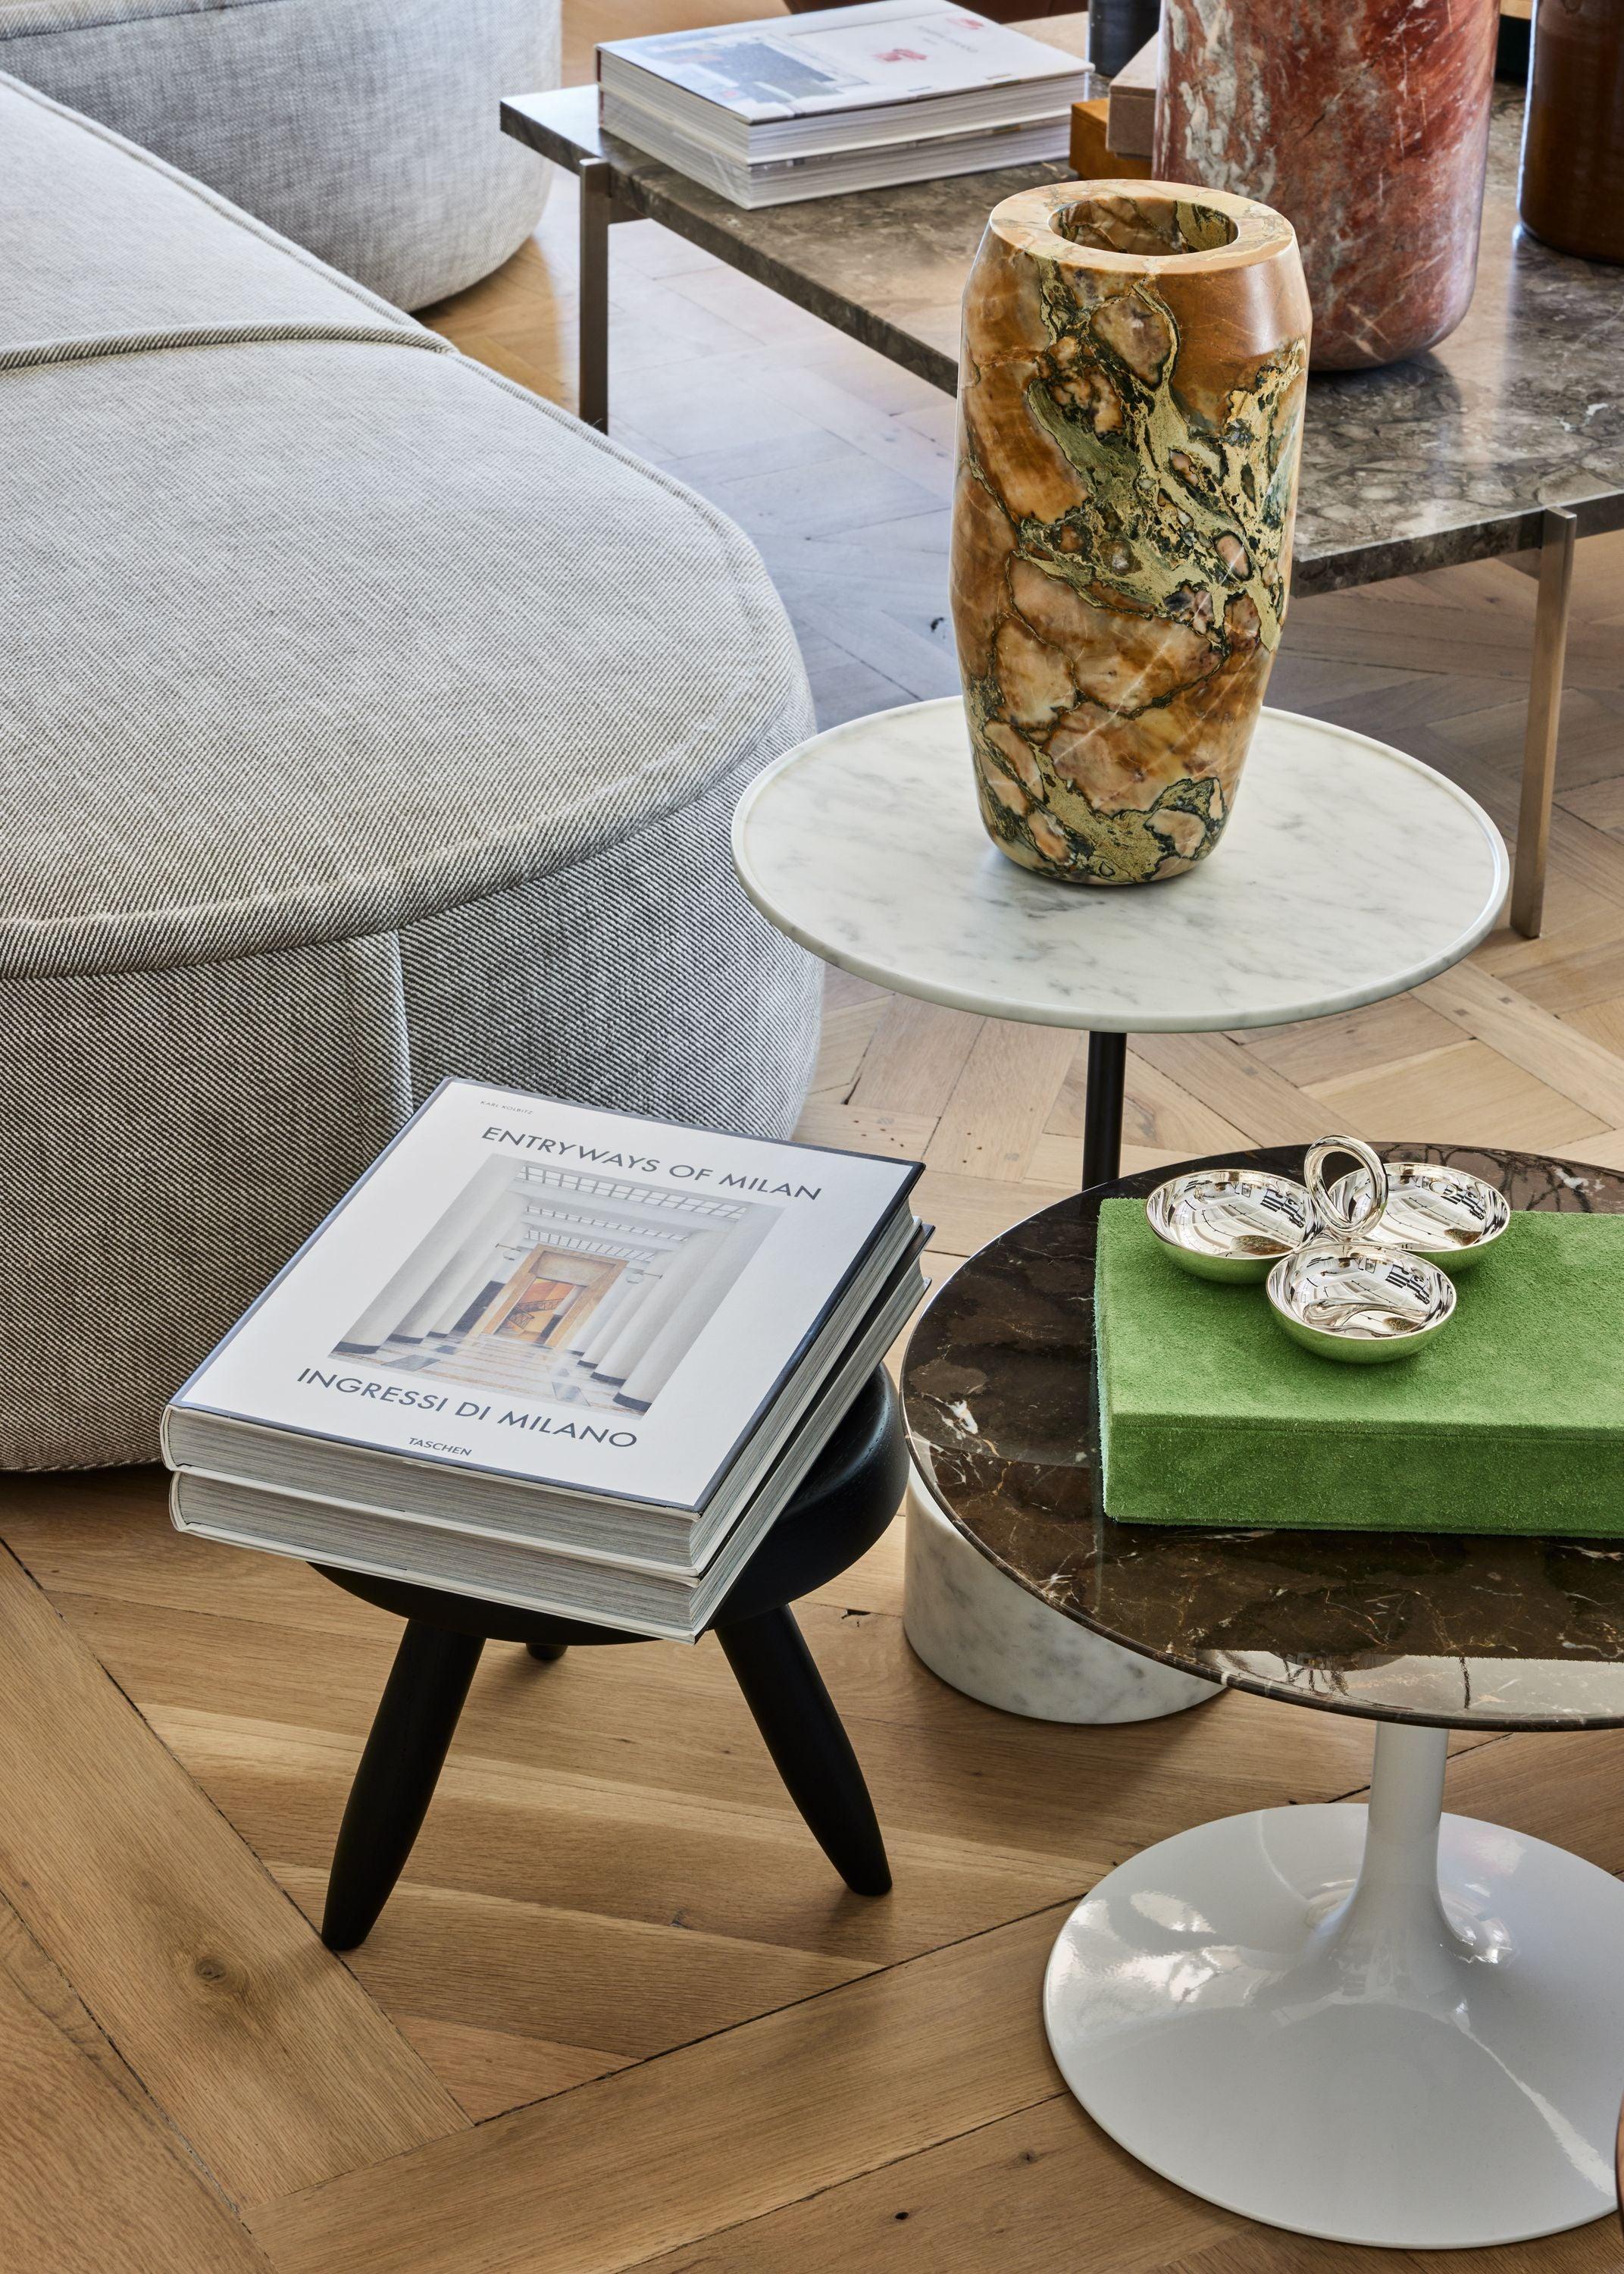 Der Name Knoll ist seit langem ein Synonym für bahnbrechende moderne Möbelkollektionen und Kollaborationen mit einigen der berühmtesten Architekten und Designer der Welt, darunter die ikonischen Designs von Eero Saarinen, Marcel Breuer, Warren